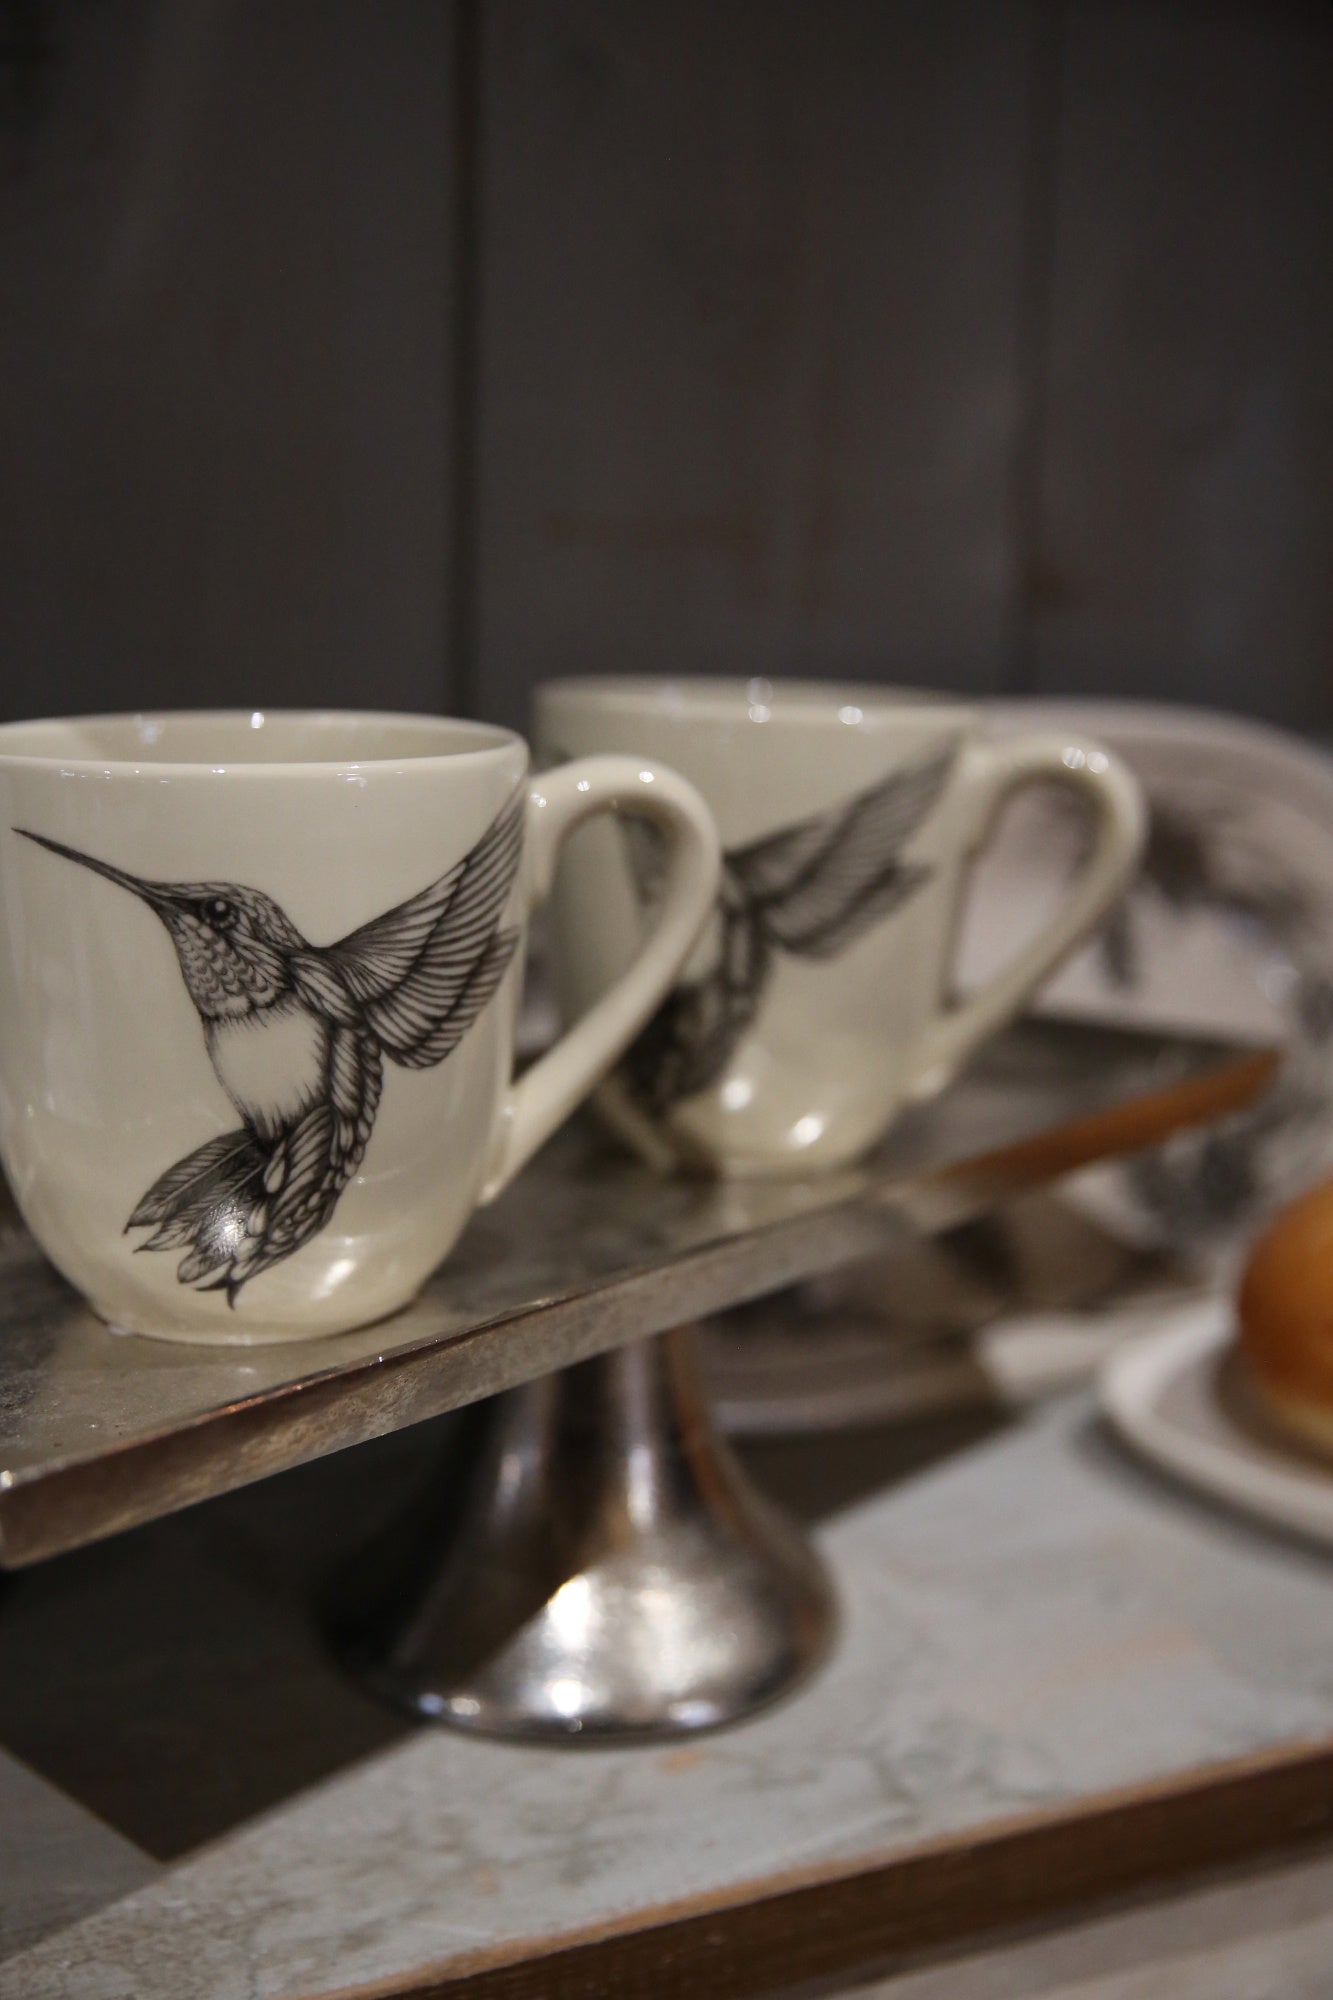 ZINDEL Mug Hummingbird #4 - White